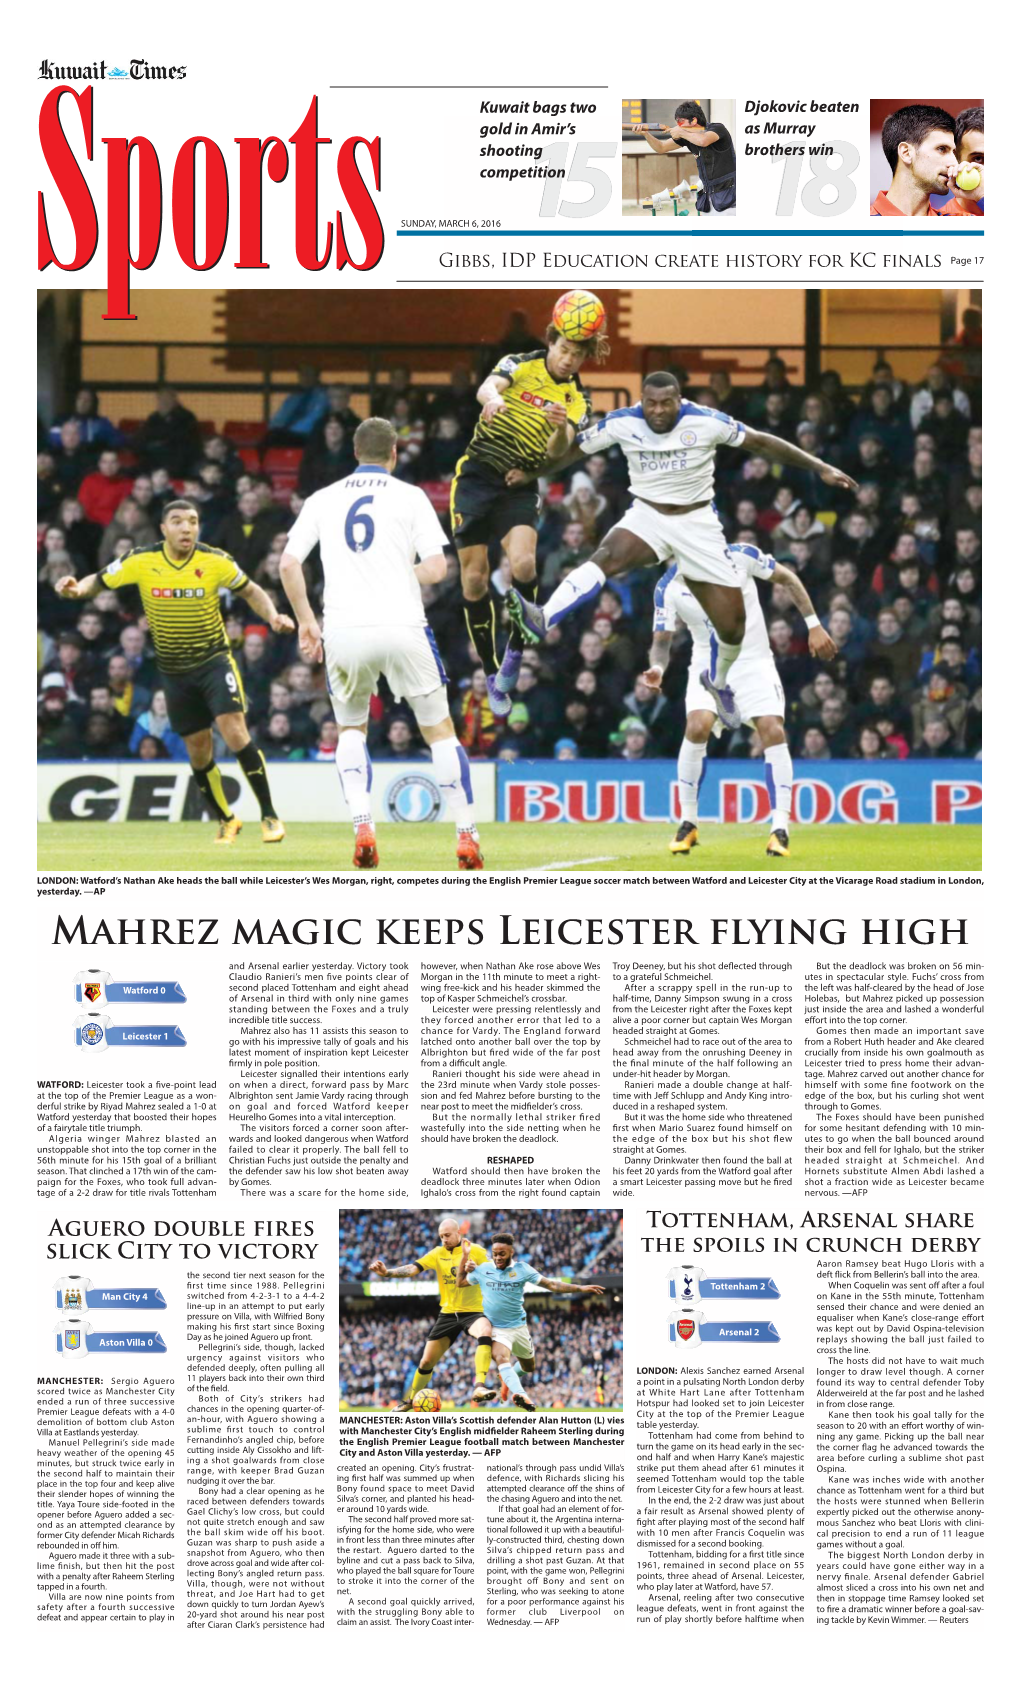 Mahrez Magic Keeps Leicester Flying High